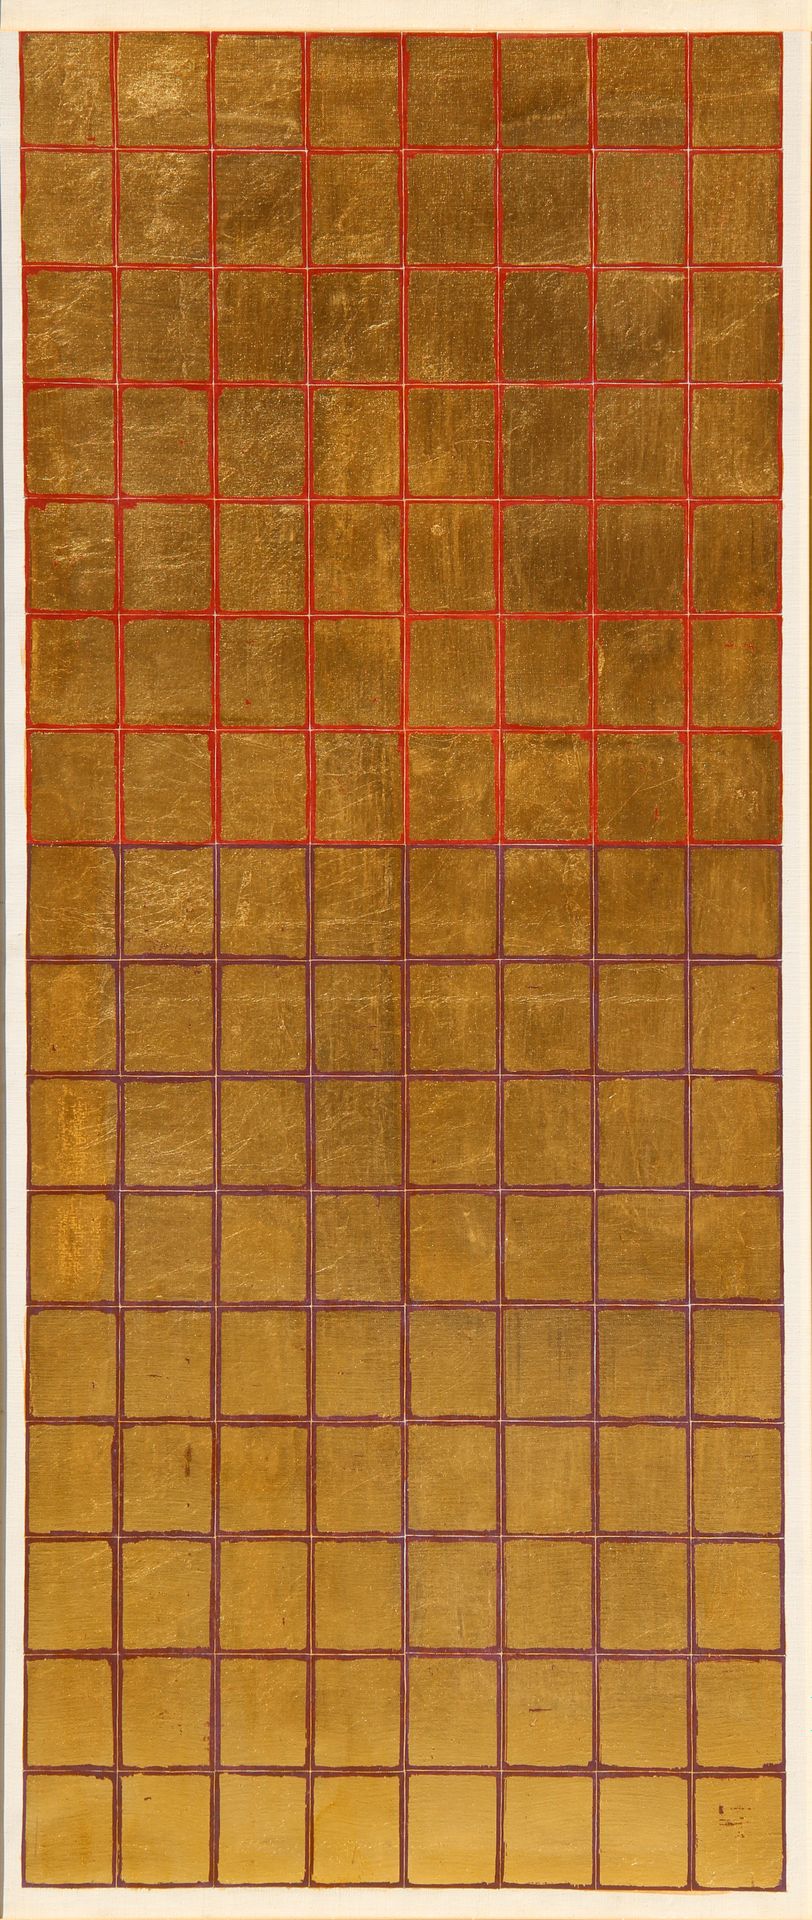 Remo BIANCO Tableau doré Années 1980, acrylique sur toile, cm. 120x50

Œuvre enr&hellip;